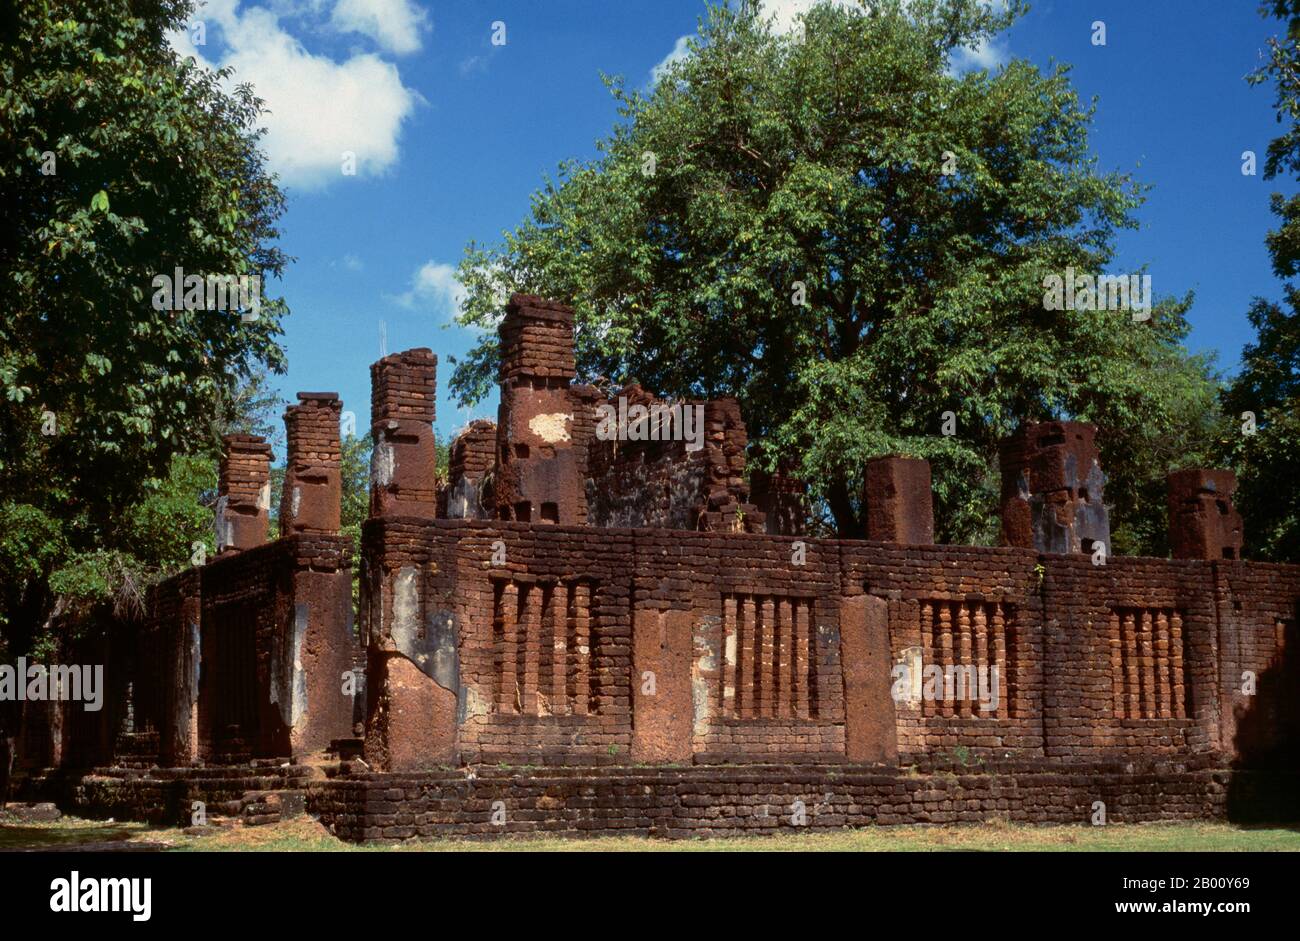 Thailand: Wat Phra Non, Kamphaeng Phet Historical Park. Kamphaeng Phet Historical Park in Zentral-Thailand war einst Teil des Sukhothai Königreiches, das im 13. Und 14. Jahrhundert n. Chr. blühte. Das Sukhothai Königreich war das erste der thailändischen Königreiche. Sukhothai, was wörtlich "Dawn of Happiness" bedeutet, war die Hauptstadt des Sukhothai-Königreichs und wurde 1238 gegründet. Es war die Hauptstadt des thailändischen Reiches für etwa 140 Jahre. Stockfoto